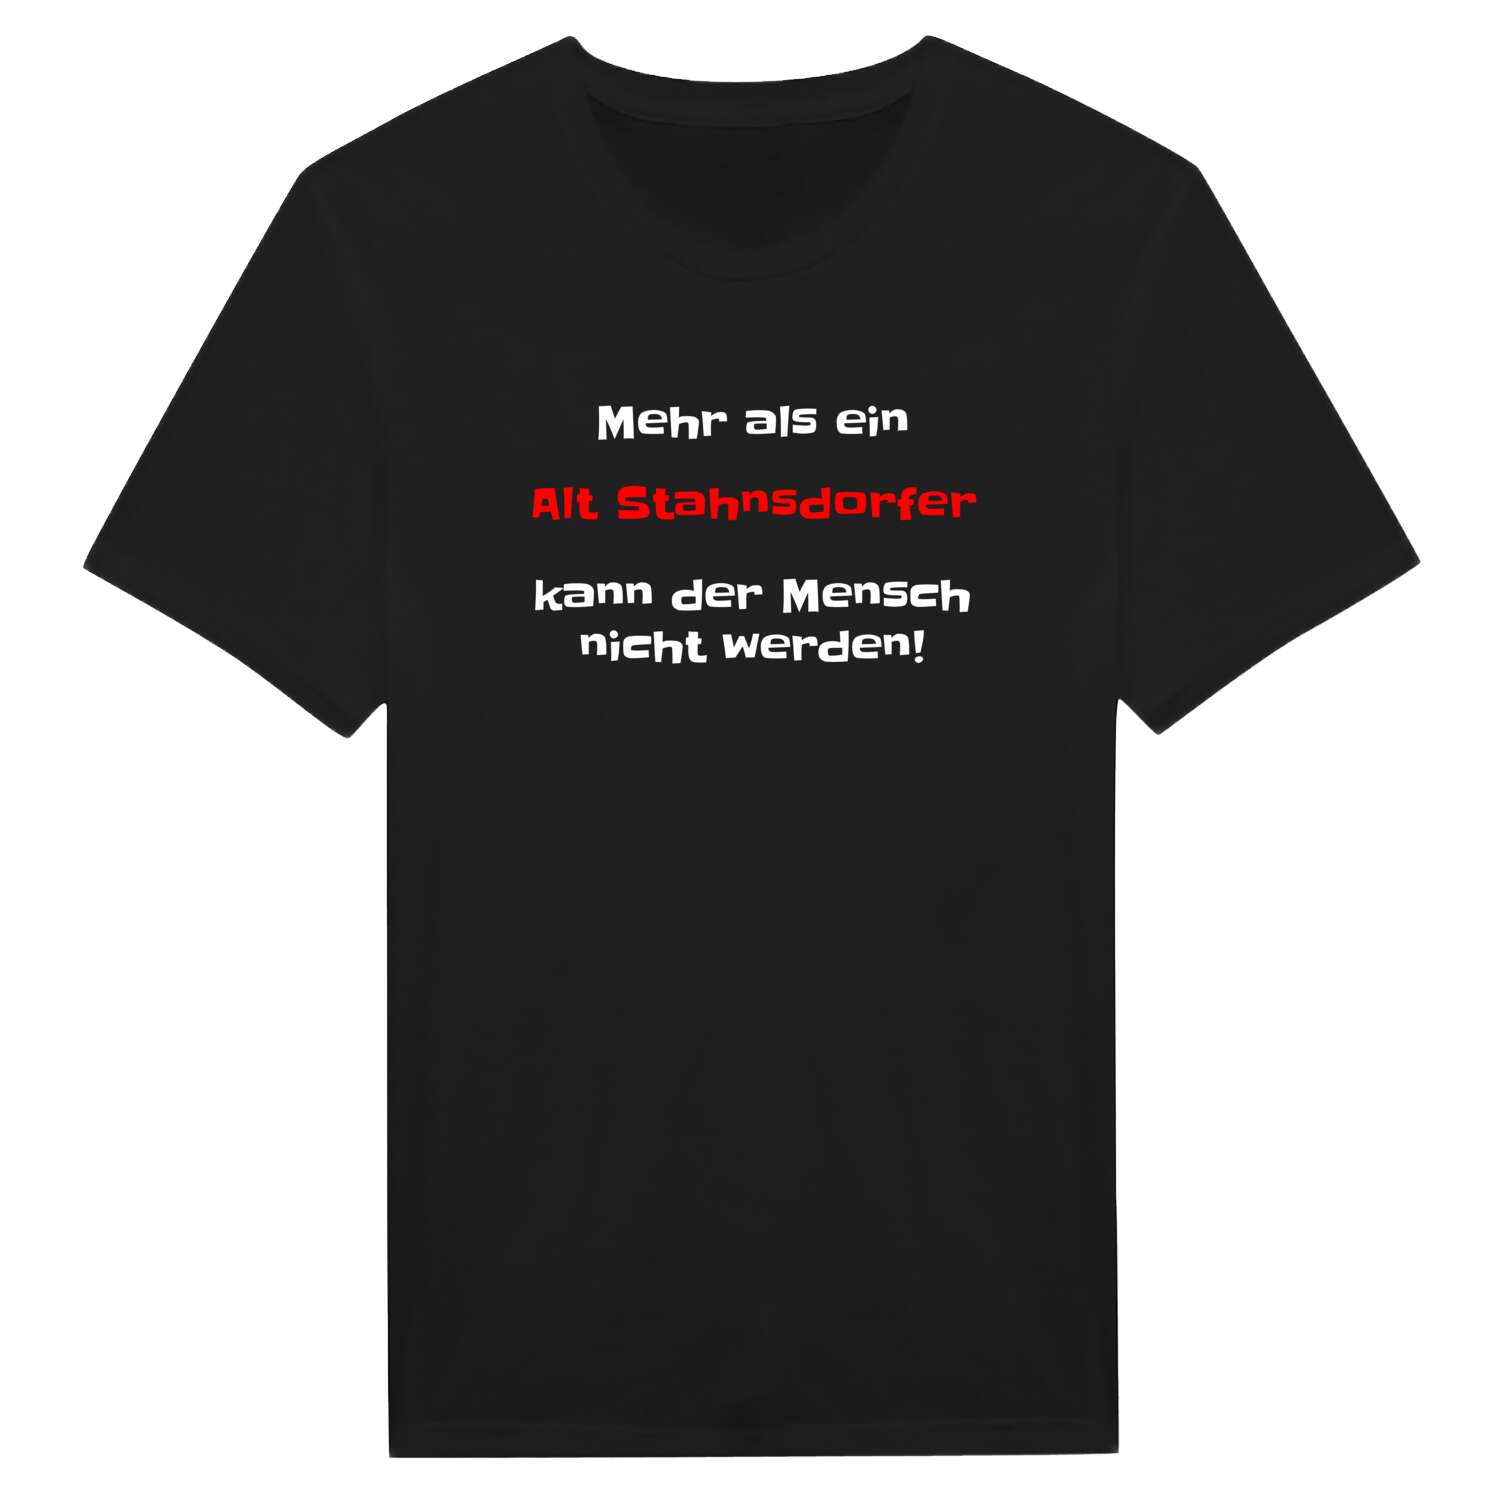 Alt Stahnsdorf T-Shirt »Mehr als ein«